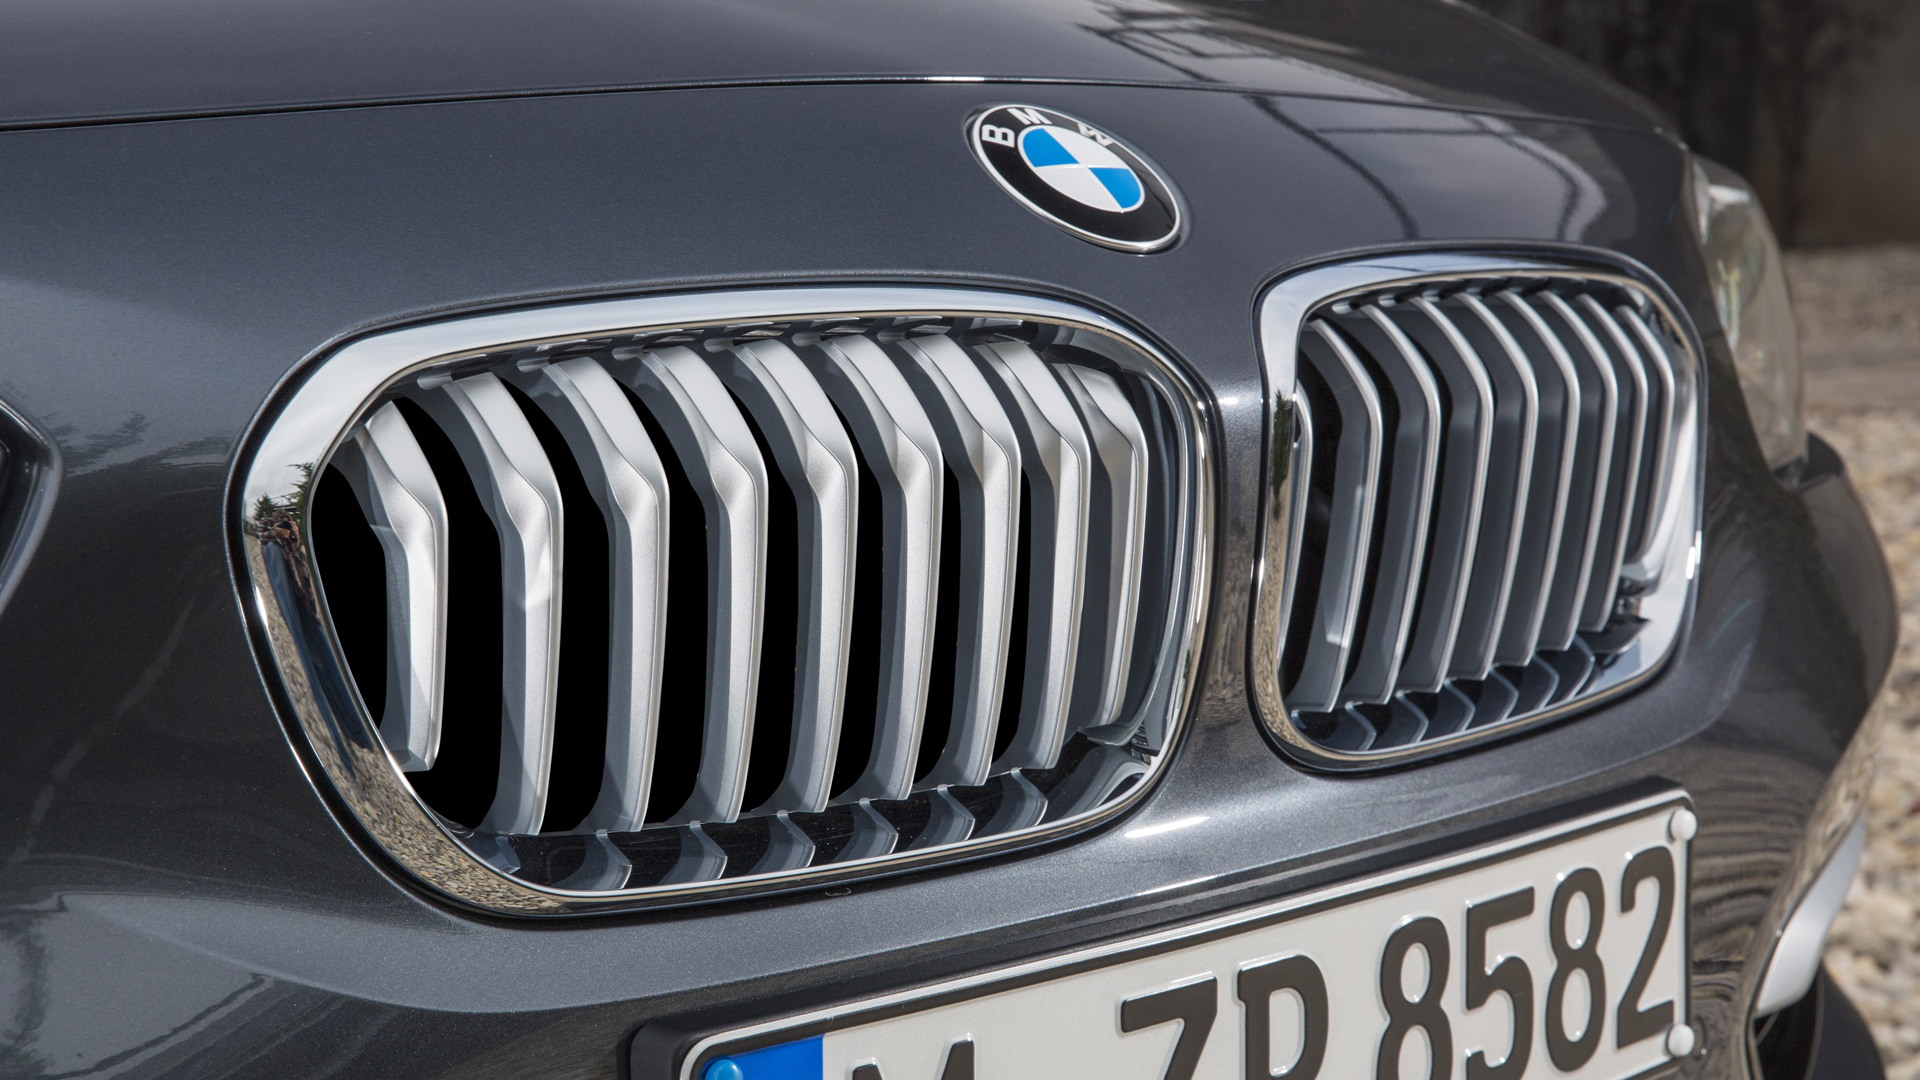 2015 BMW 1-Series Hatchback